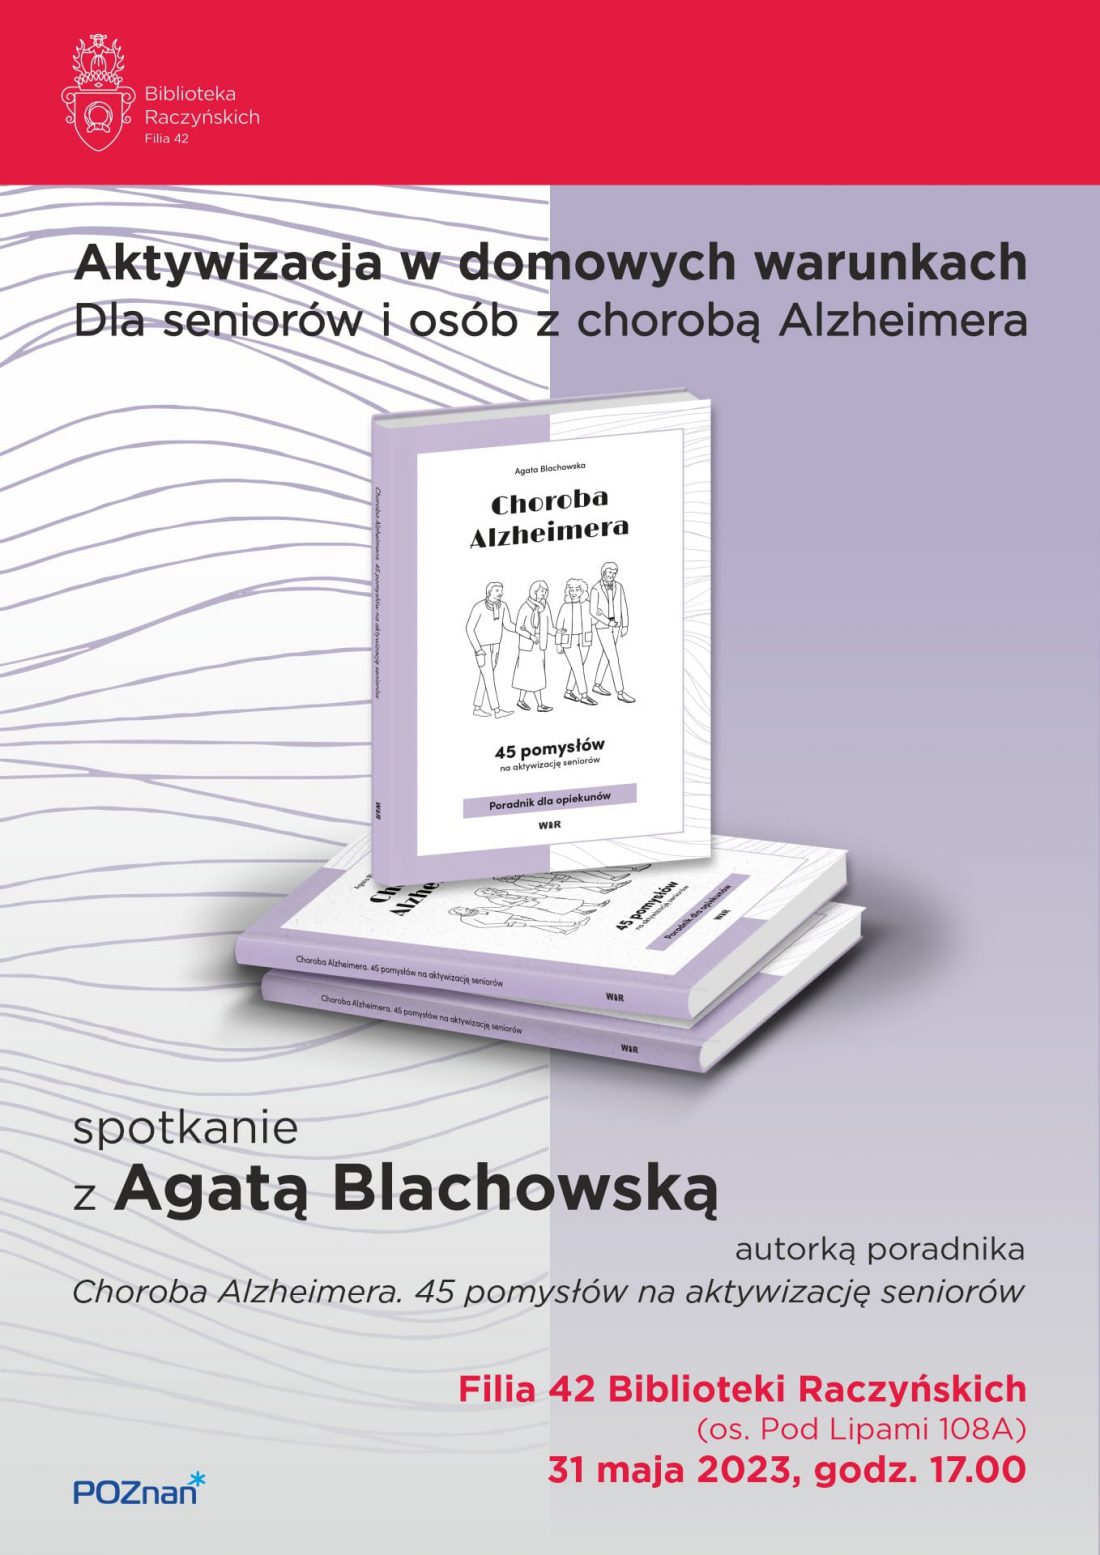 W centralnej części plakatu znajduje się okładka książki z narysowanymi czterema osobami płci obojga w różnym wieku. Za książką widnieje podzielone na pół tło w kolorze liliowym i białym w liliowe miękkie poziome linie.